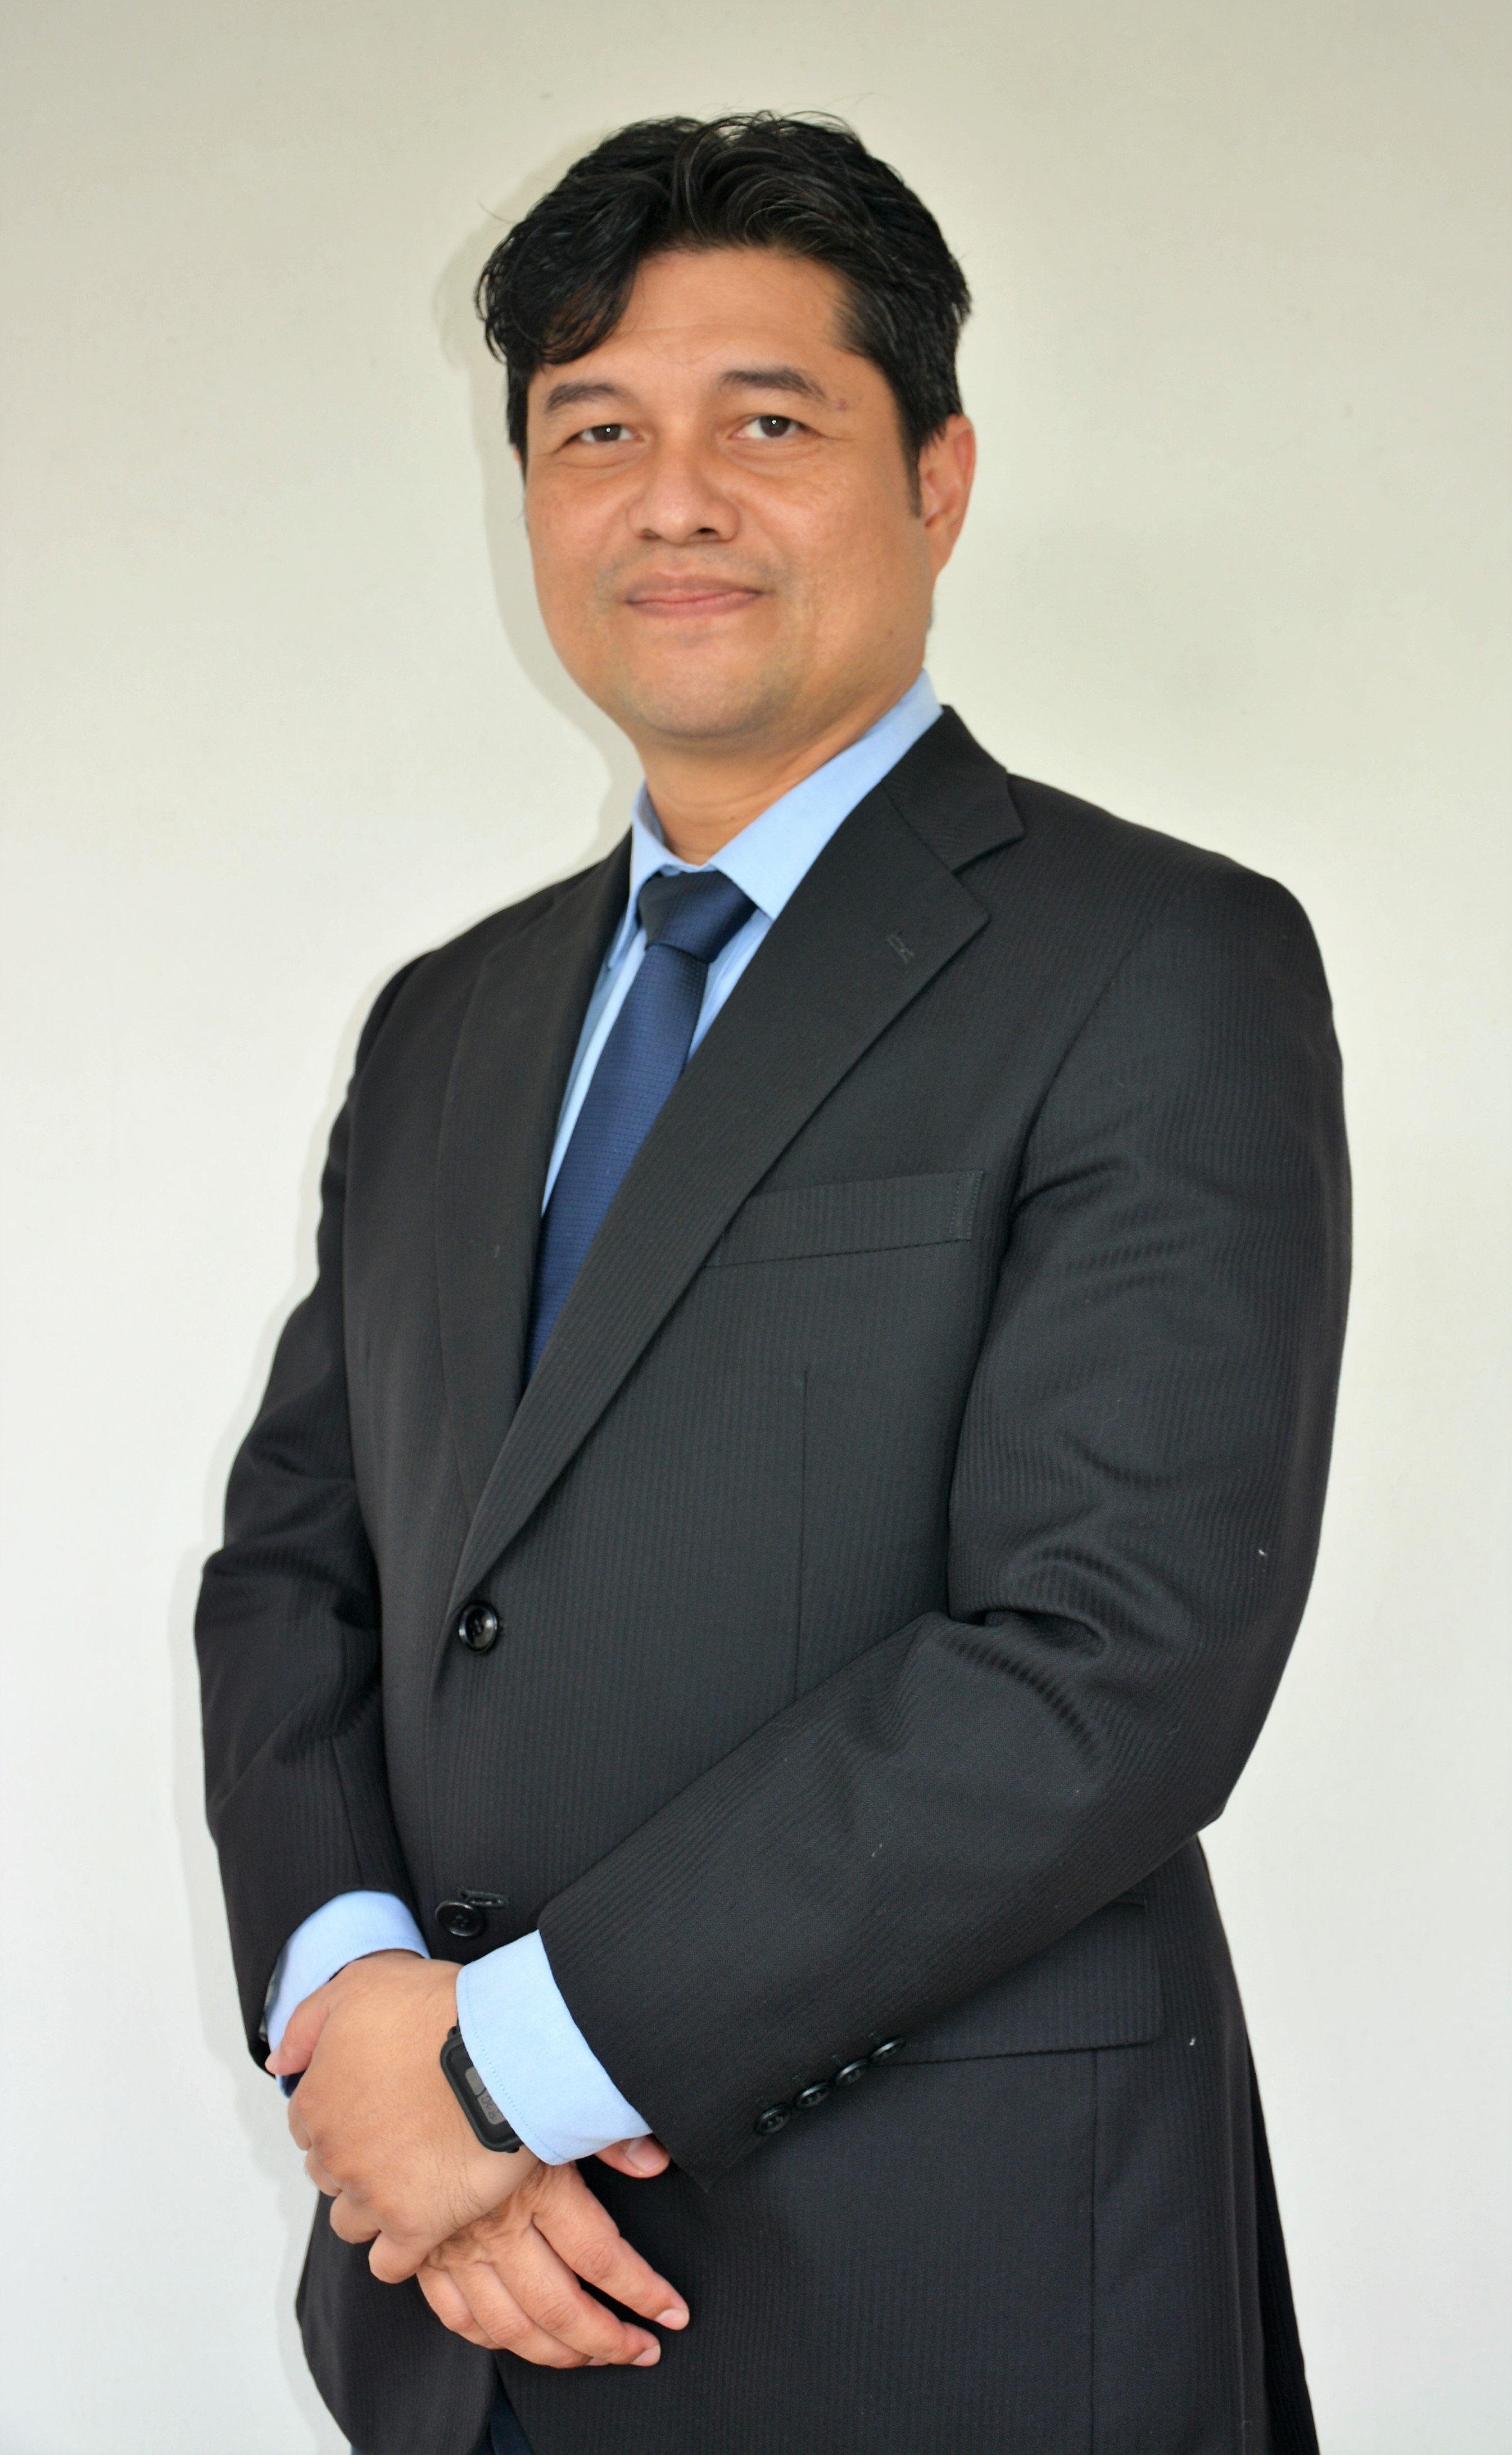 Dr.Mohammad Zukuwan Zainol Abidin